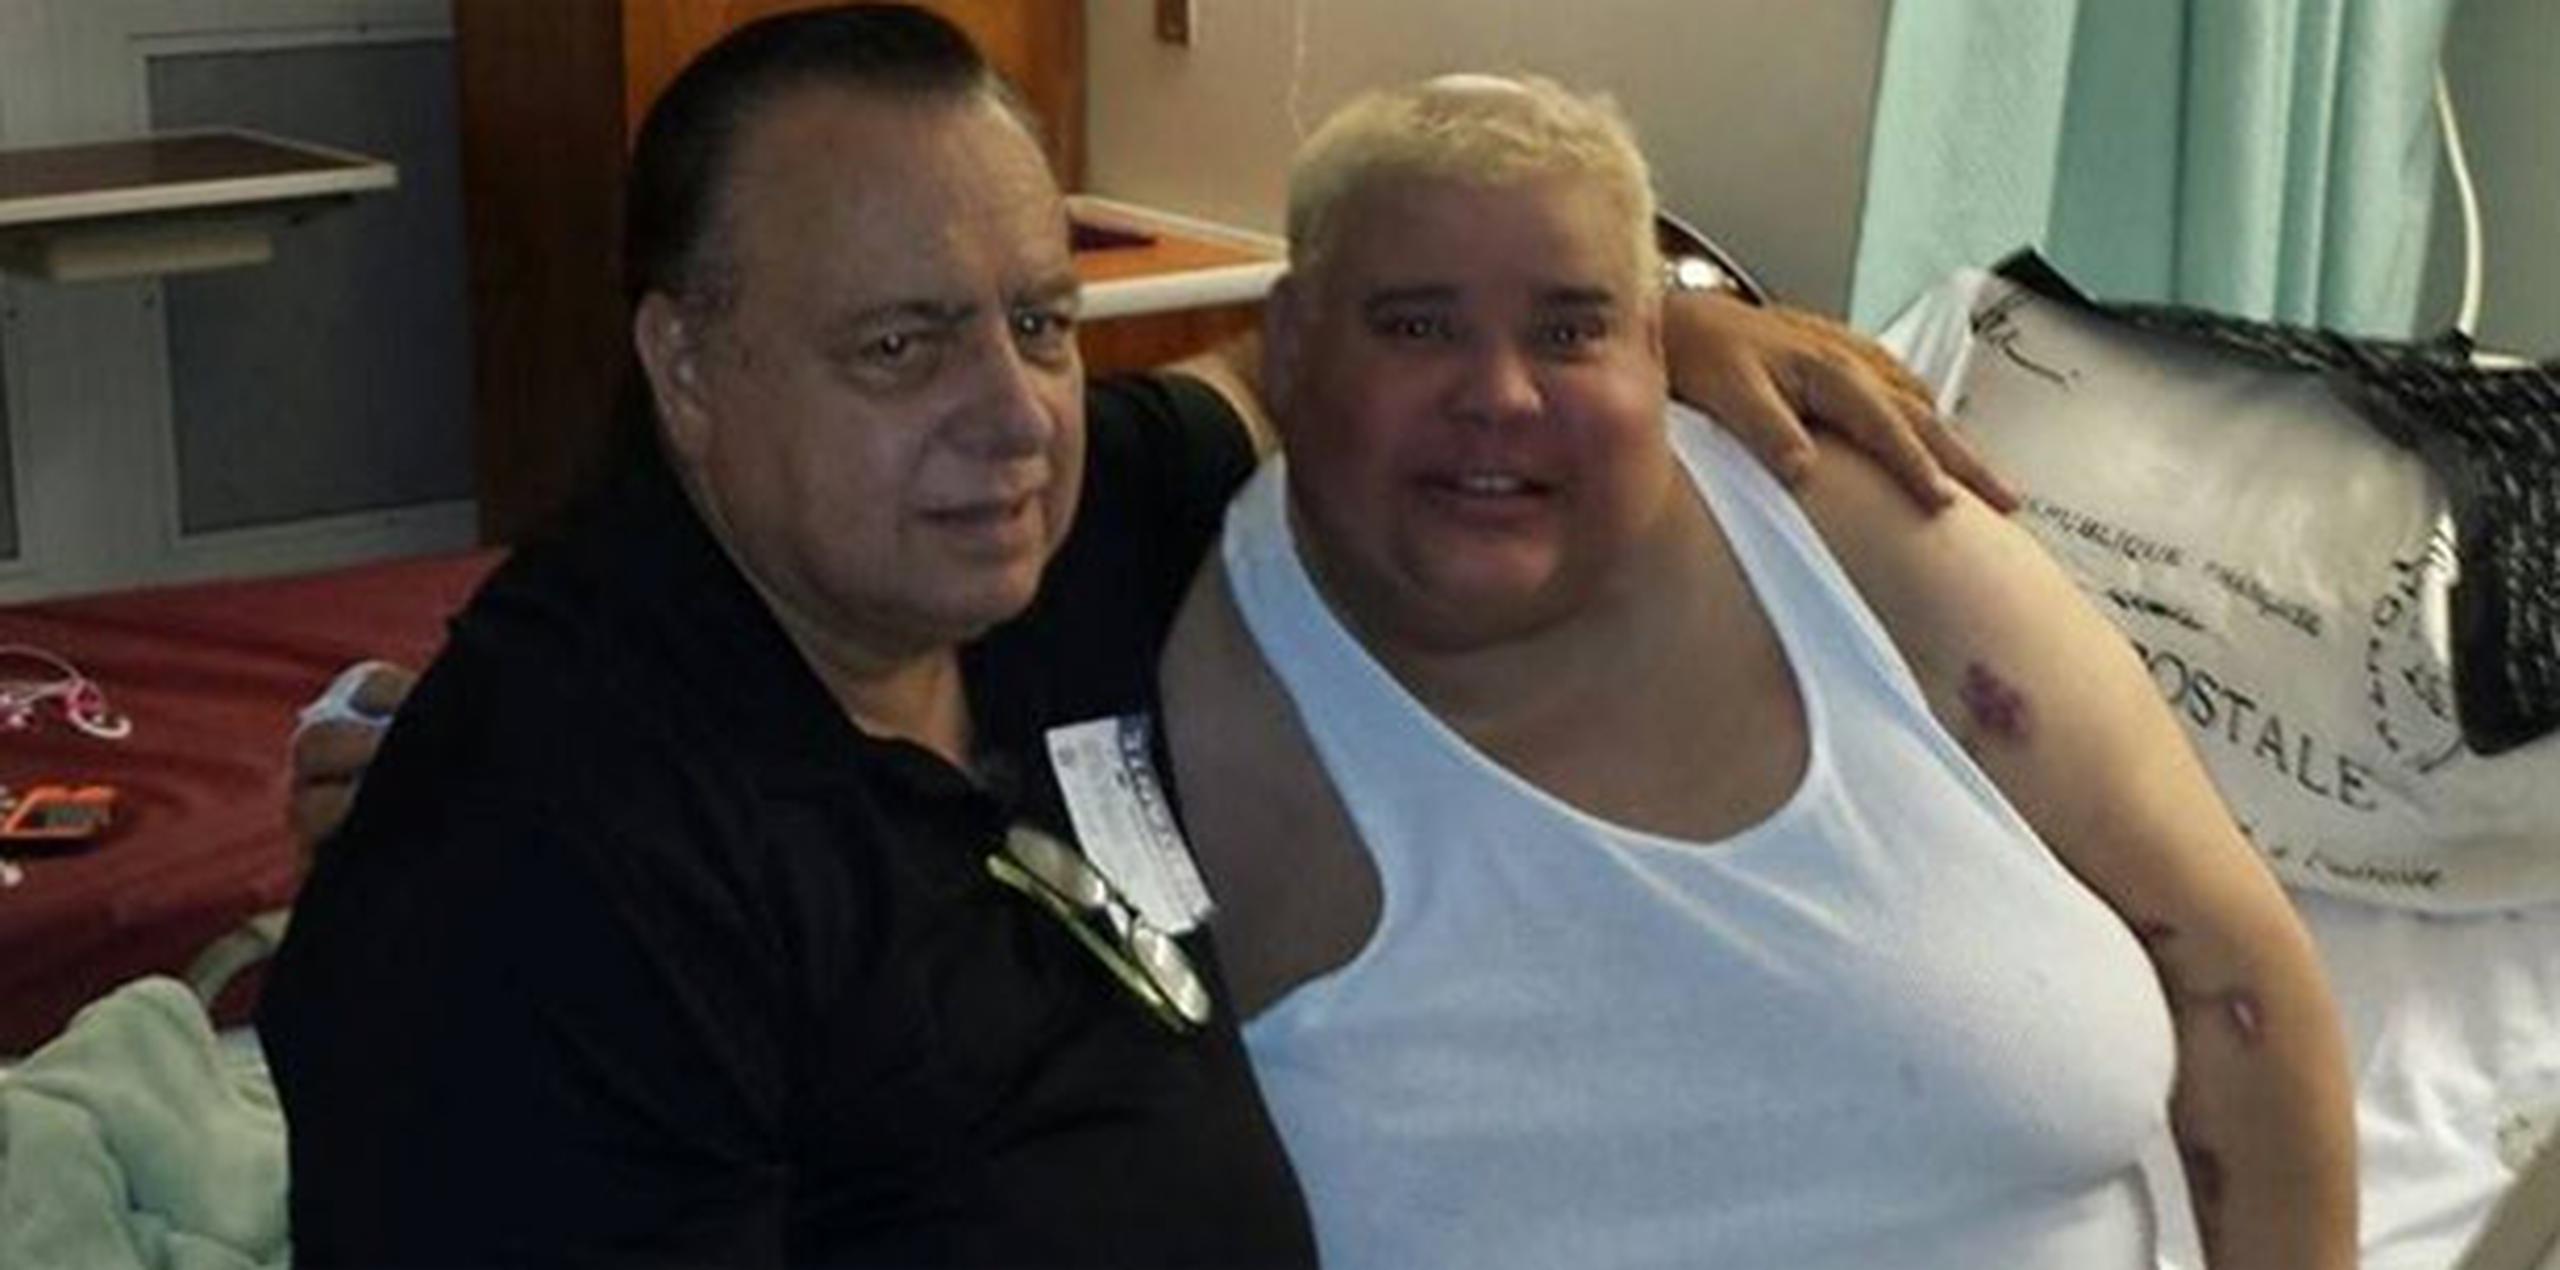 Jorge Raschke visitó anoche al transformista en el hospital para orarle debido a su condición de salud. (Suministrada)